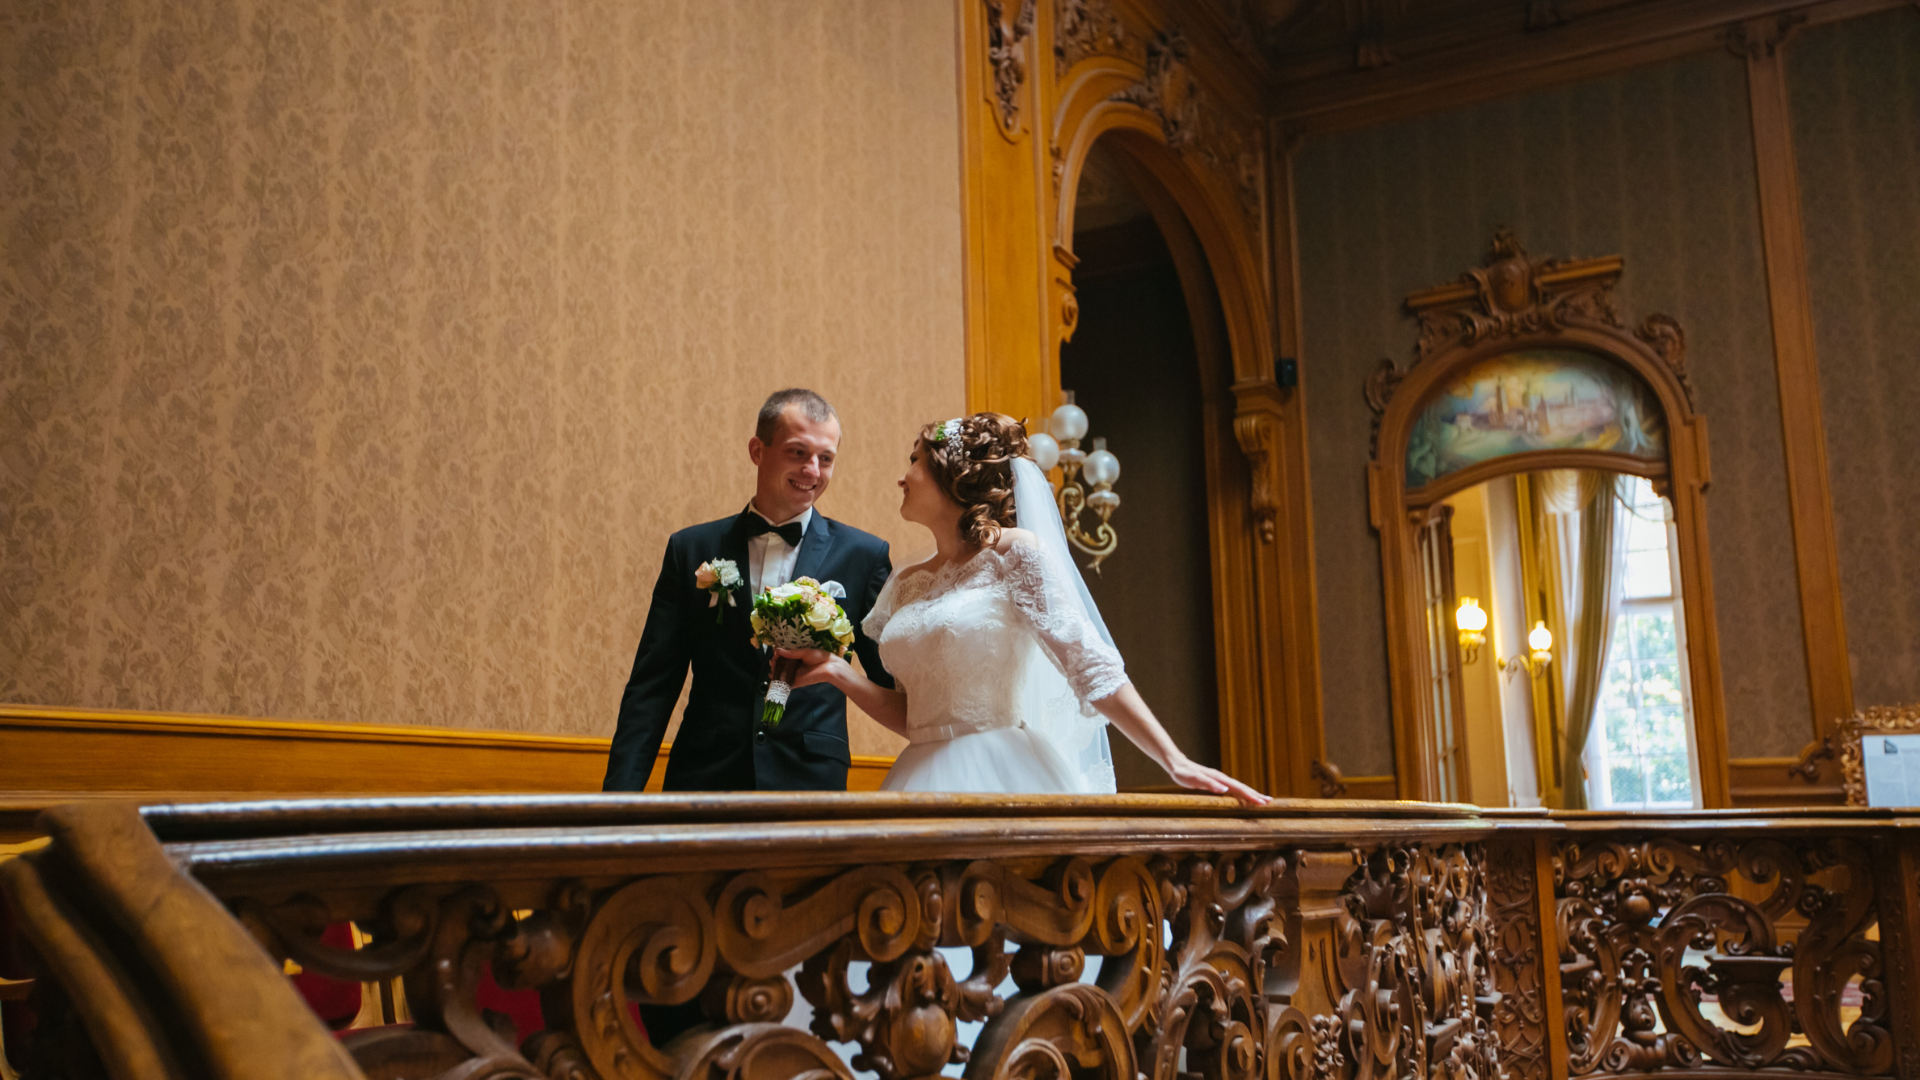 Váš vysněný svatební den se může stát skutečností. Svatba na zámku je zkrátka nezapomenutelným zážitkem. Rezervujte si sídlo pro svatbu na bridee.online.